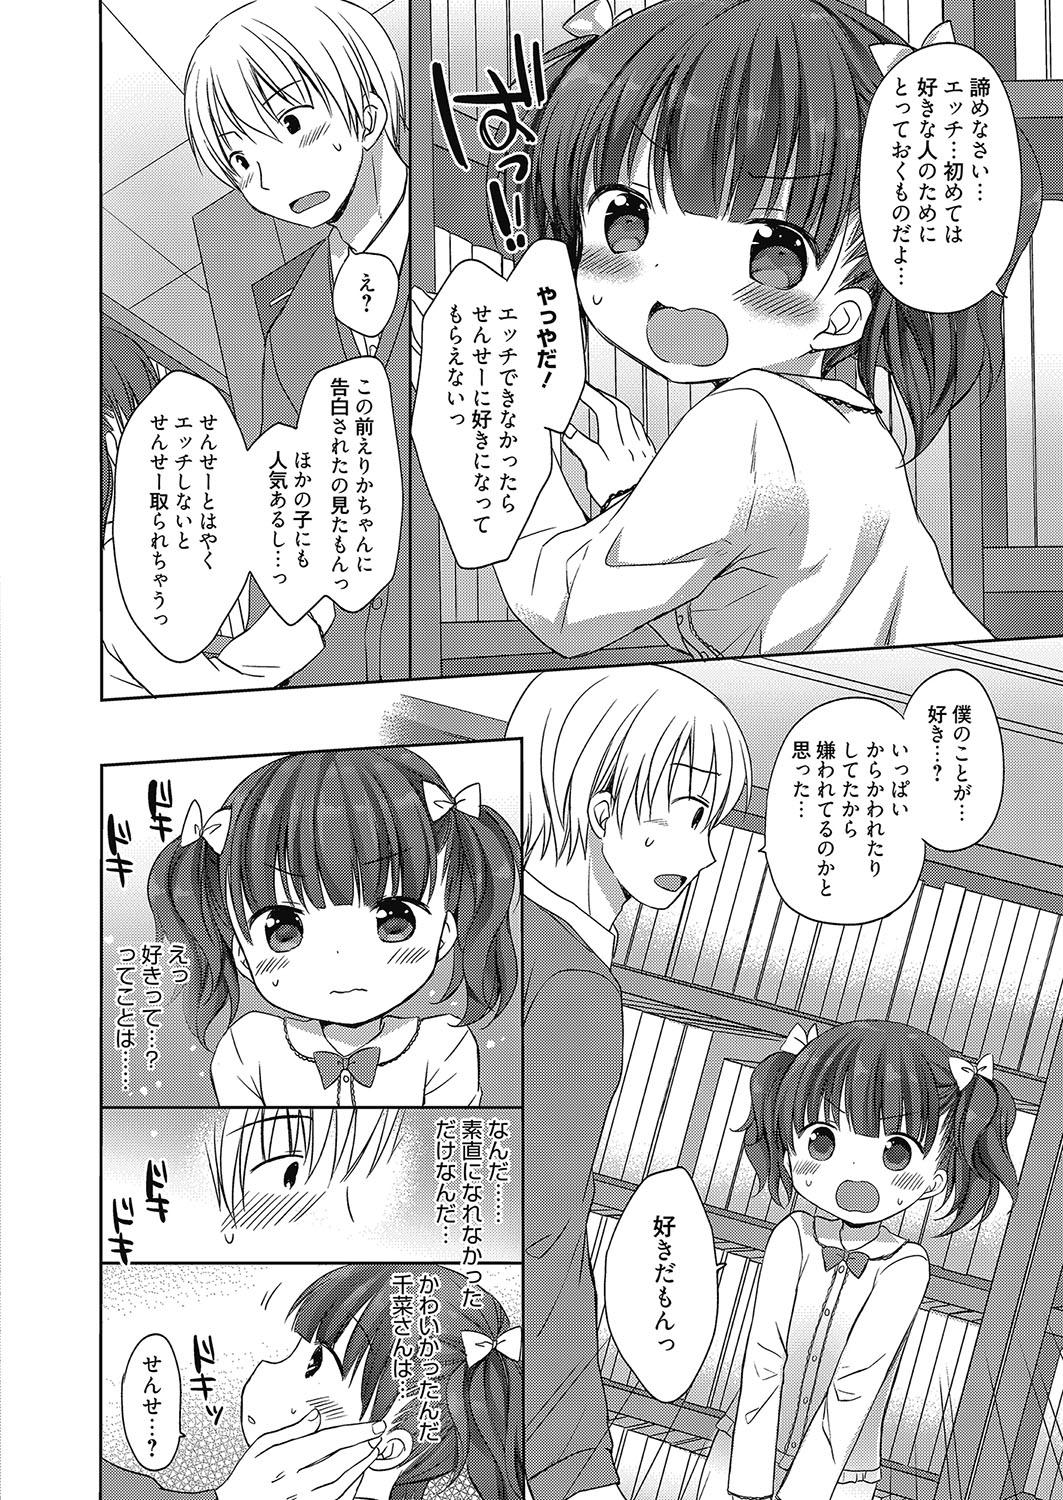 Onlyfans Web Manga Bangaichi Vol. 8 Legs - Page 9